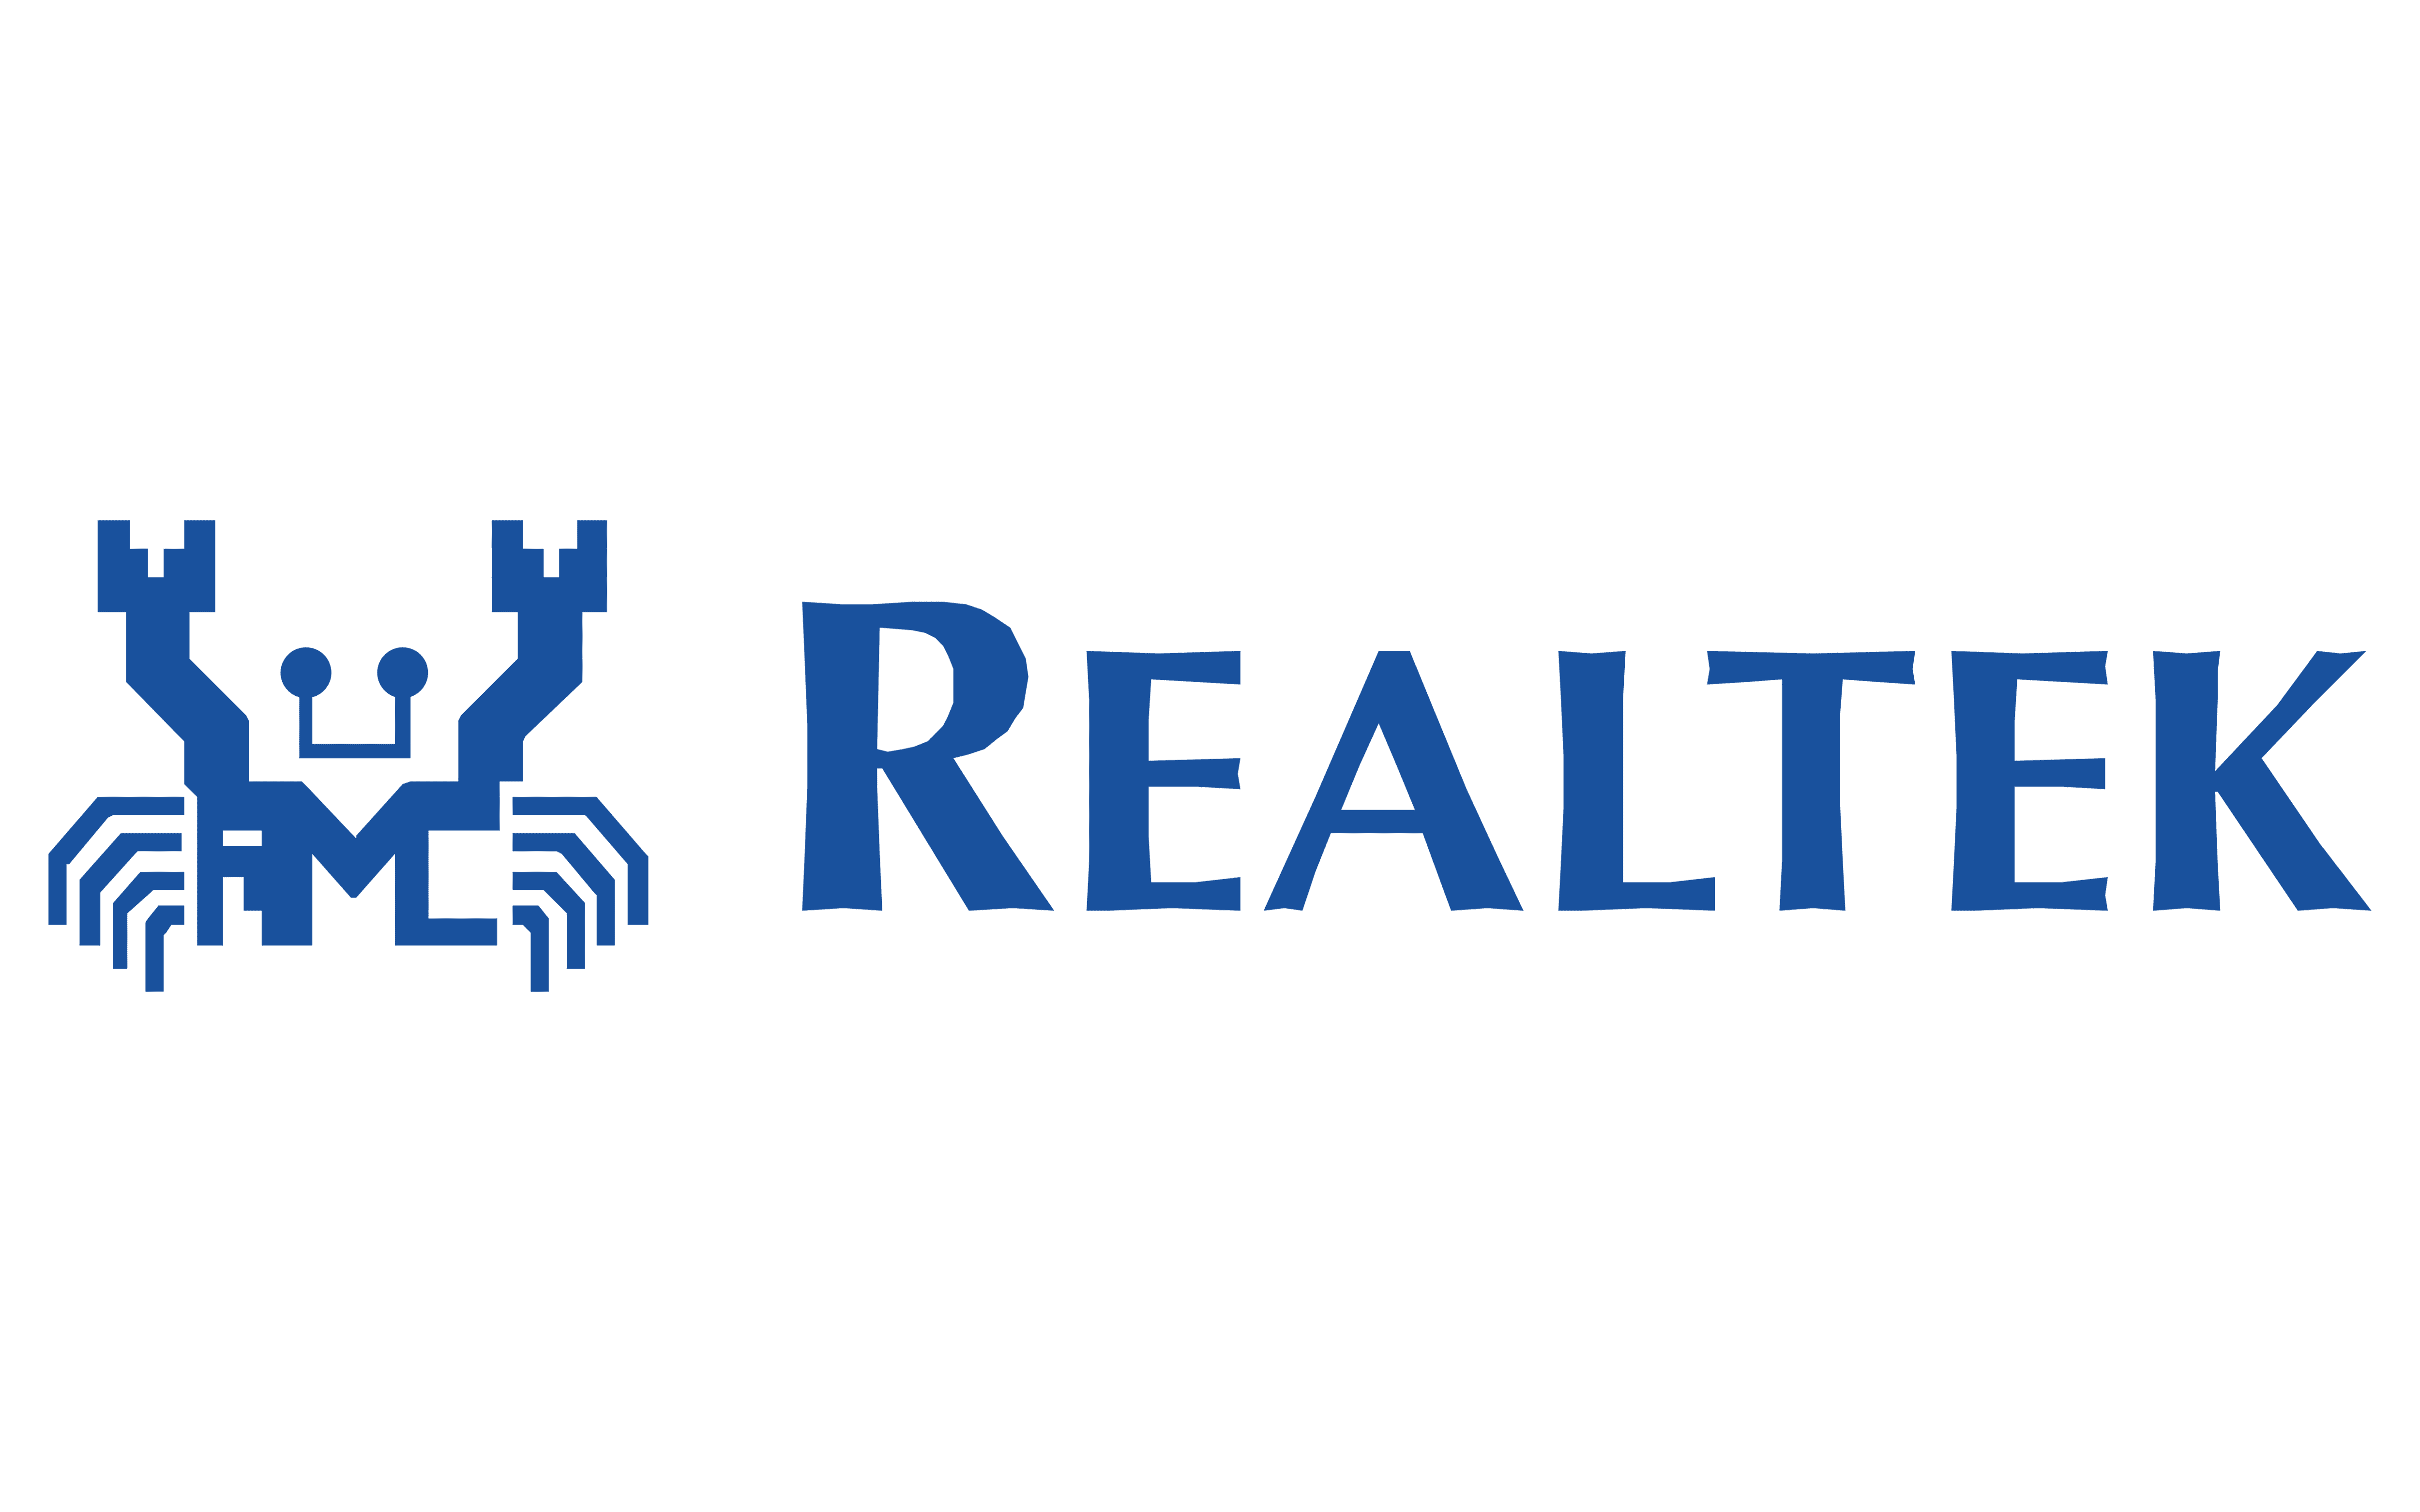 Realtek Brand Logo